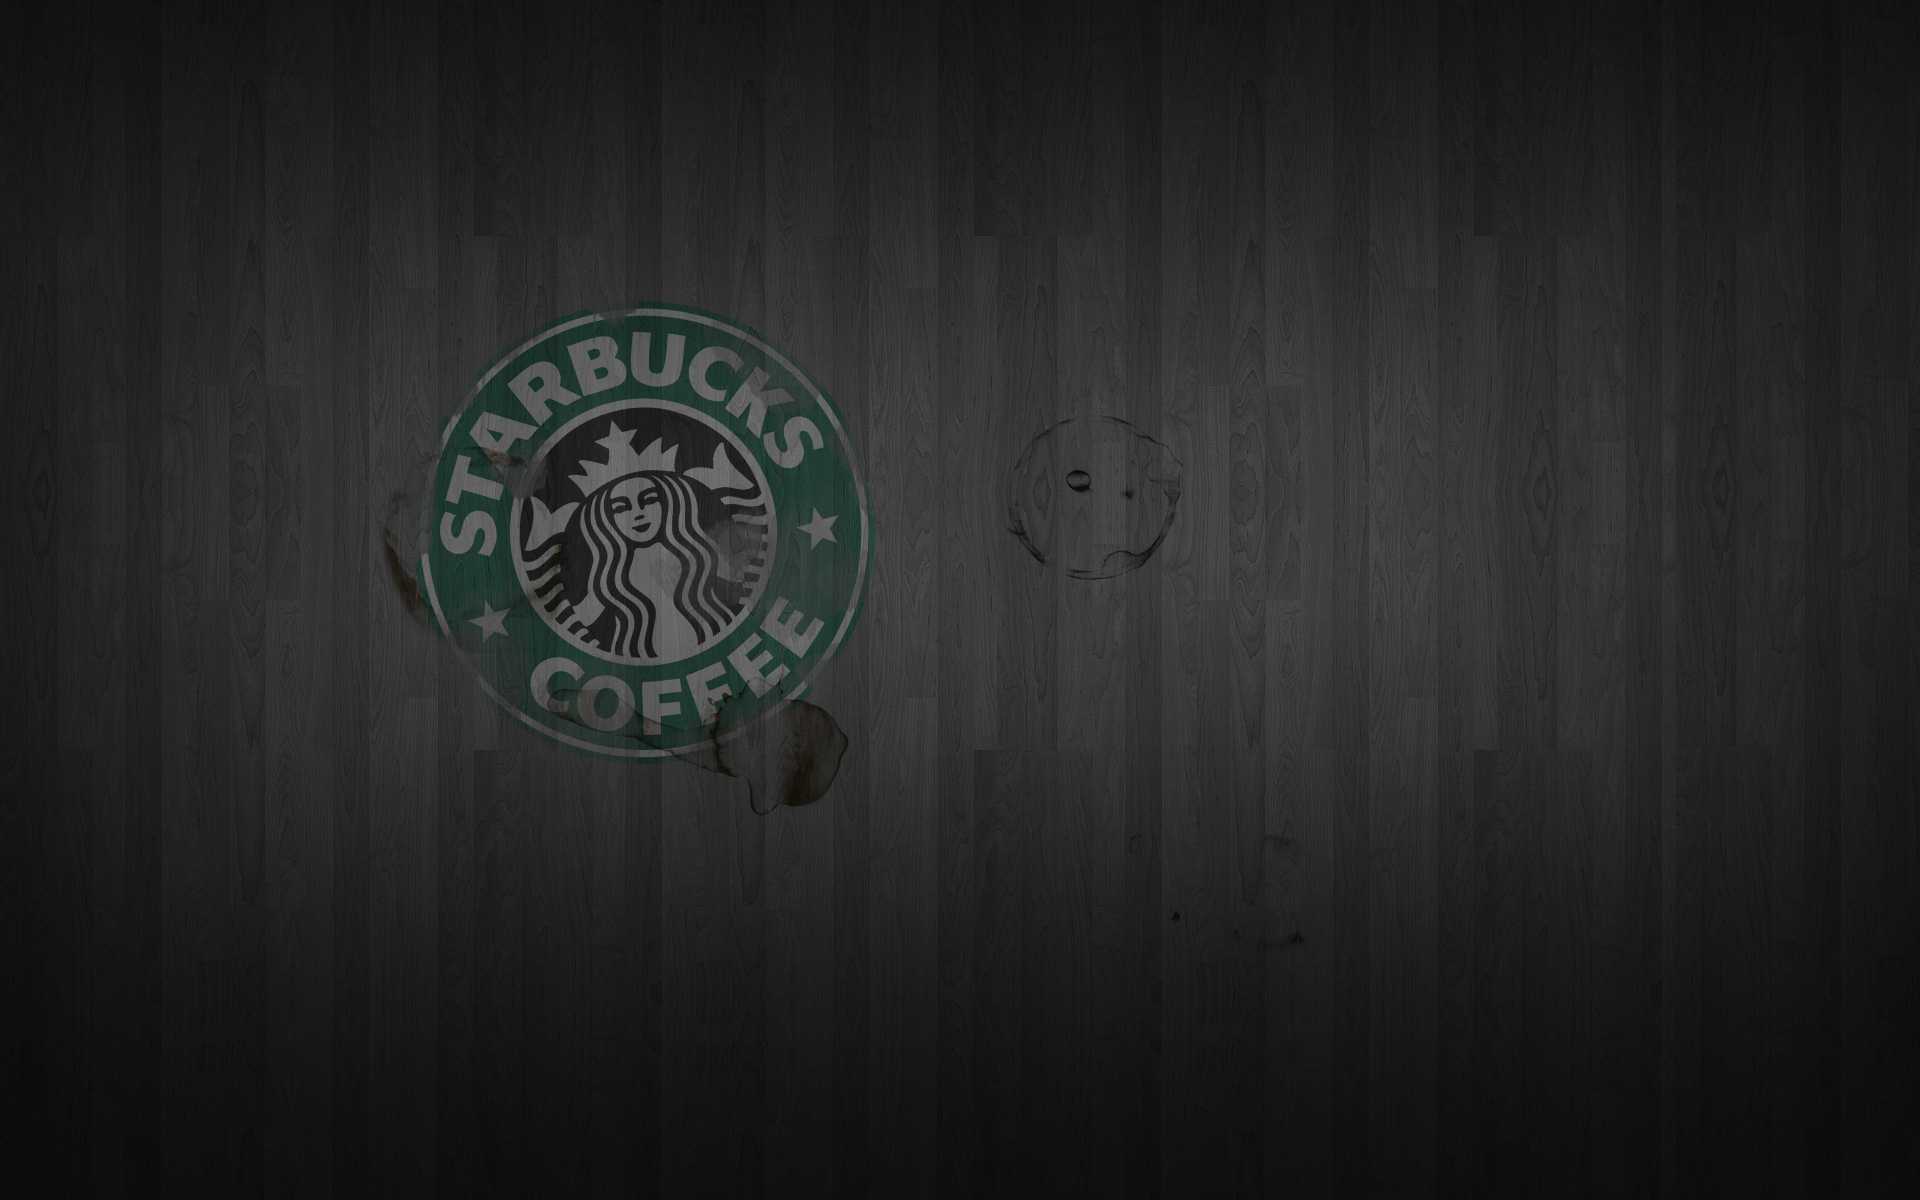 Starbucks Art Backgrounds For Powerpoint Templates – Ppt With Starbucks Powerpoint Template